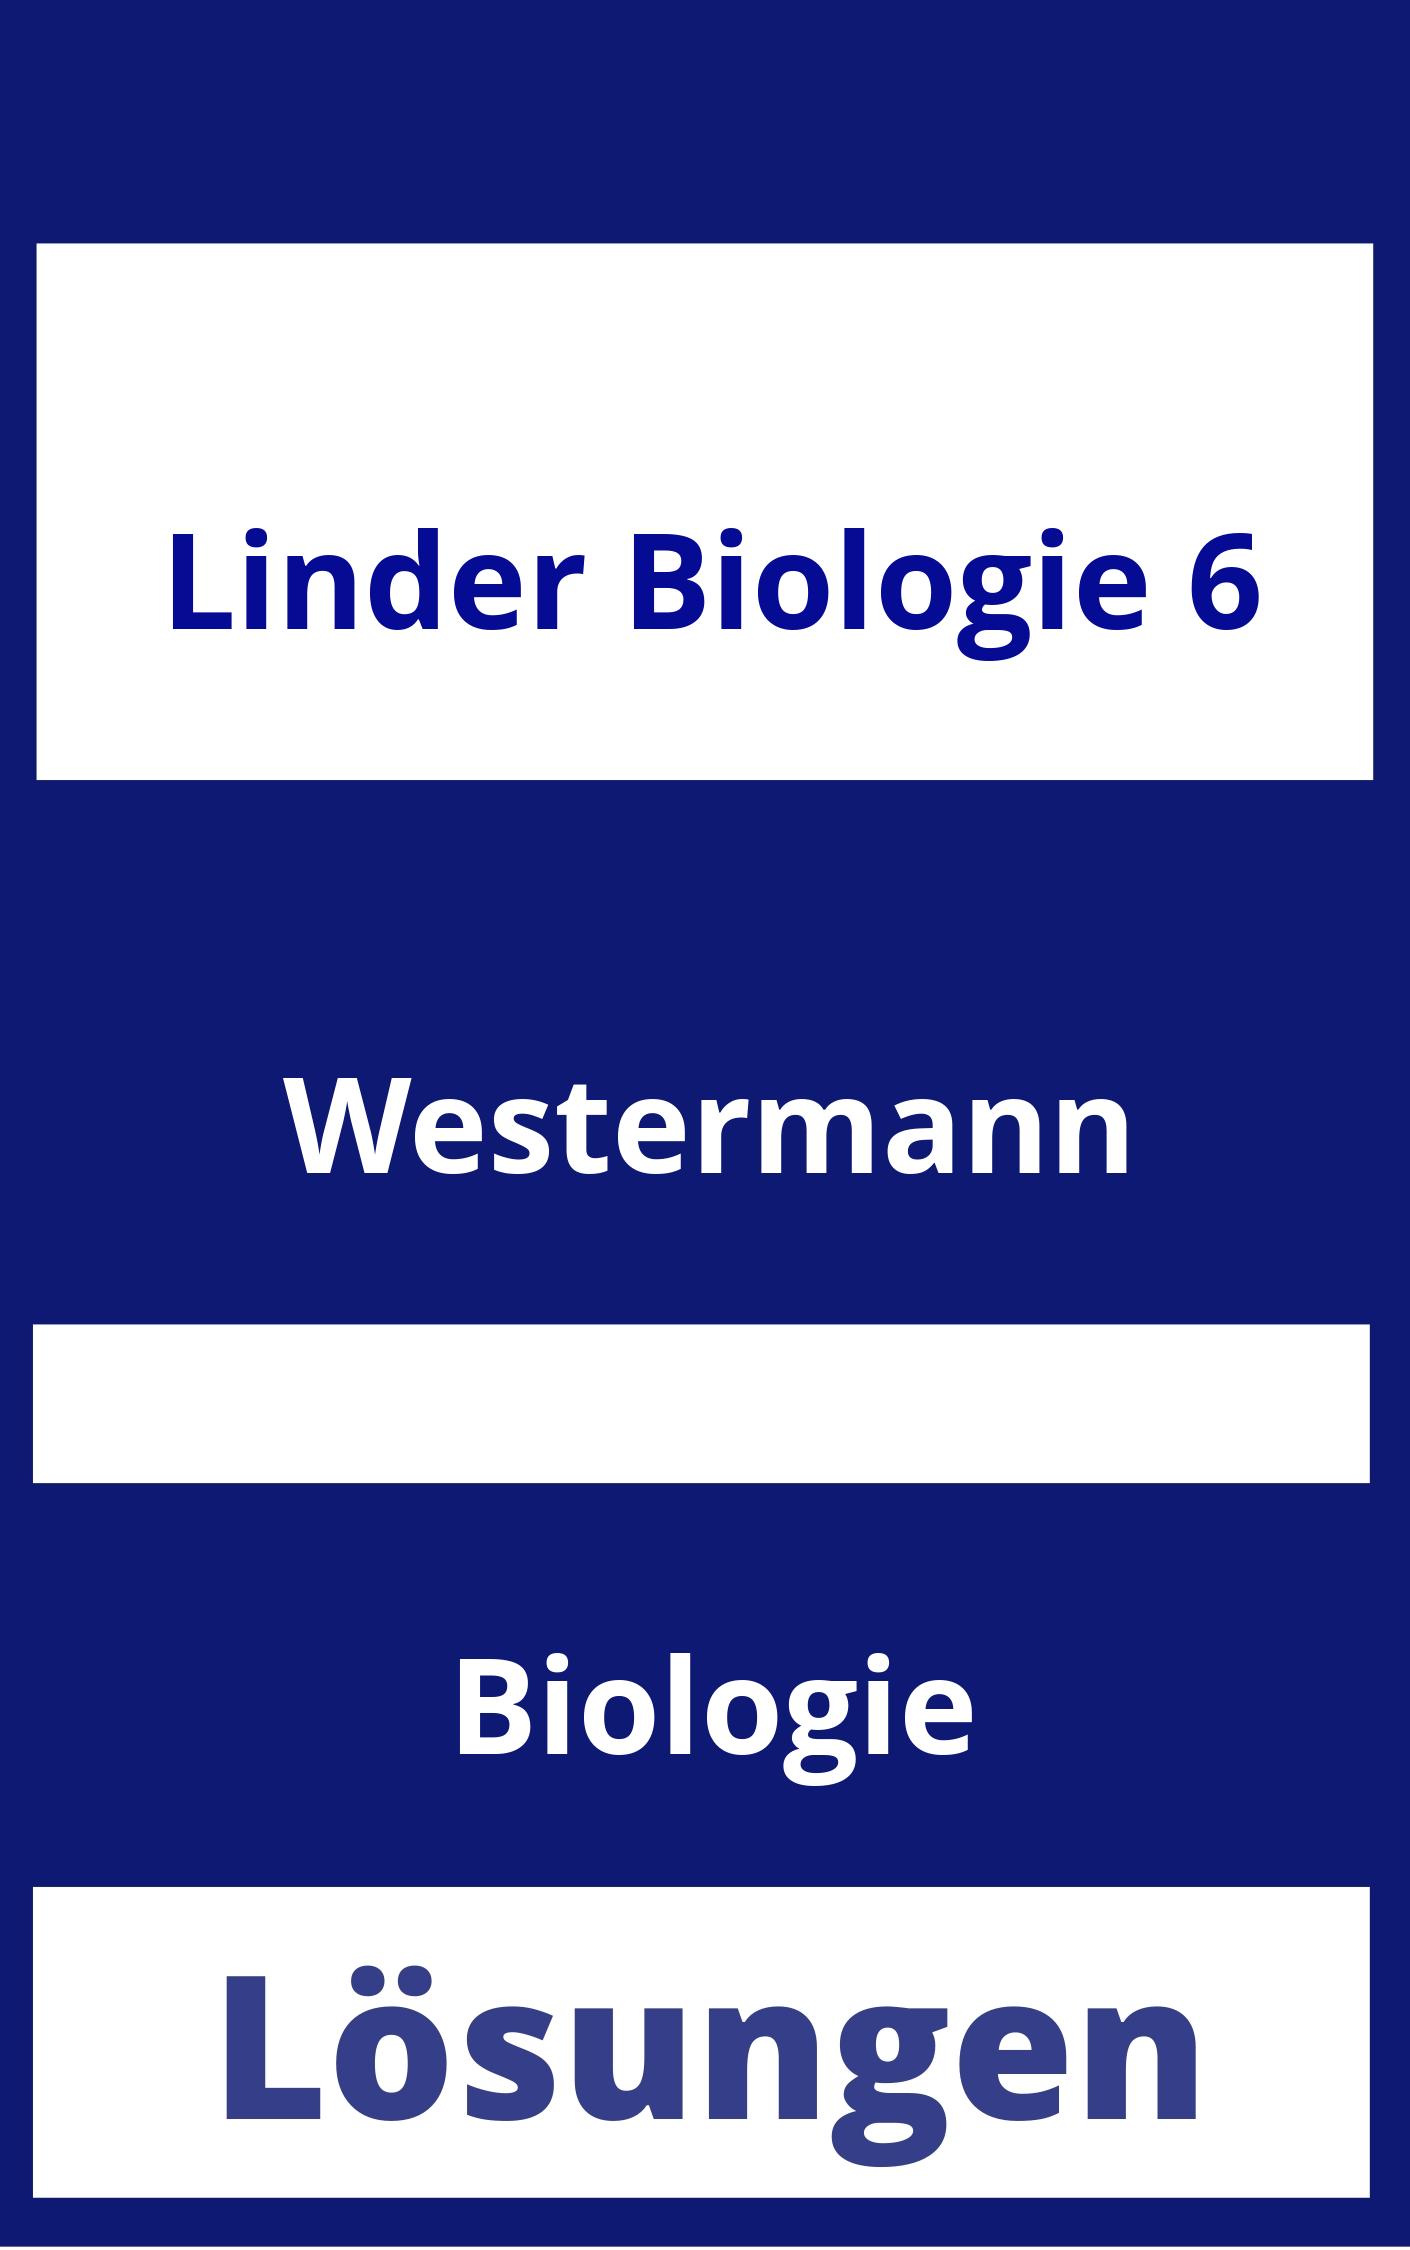 Linder Biologie 6